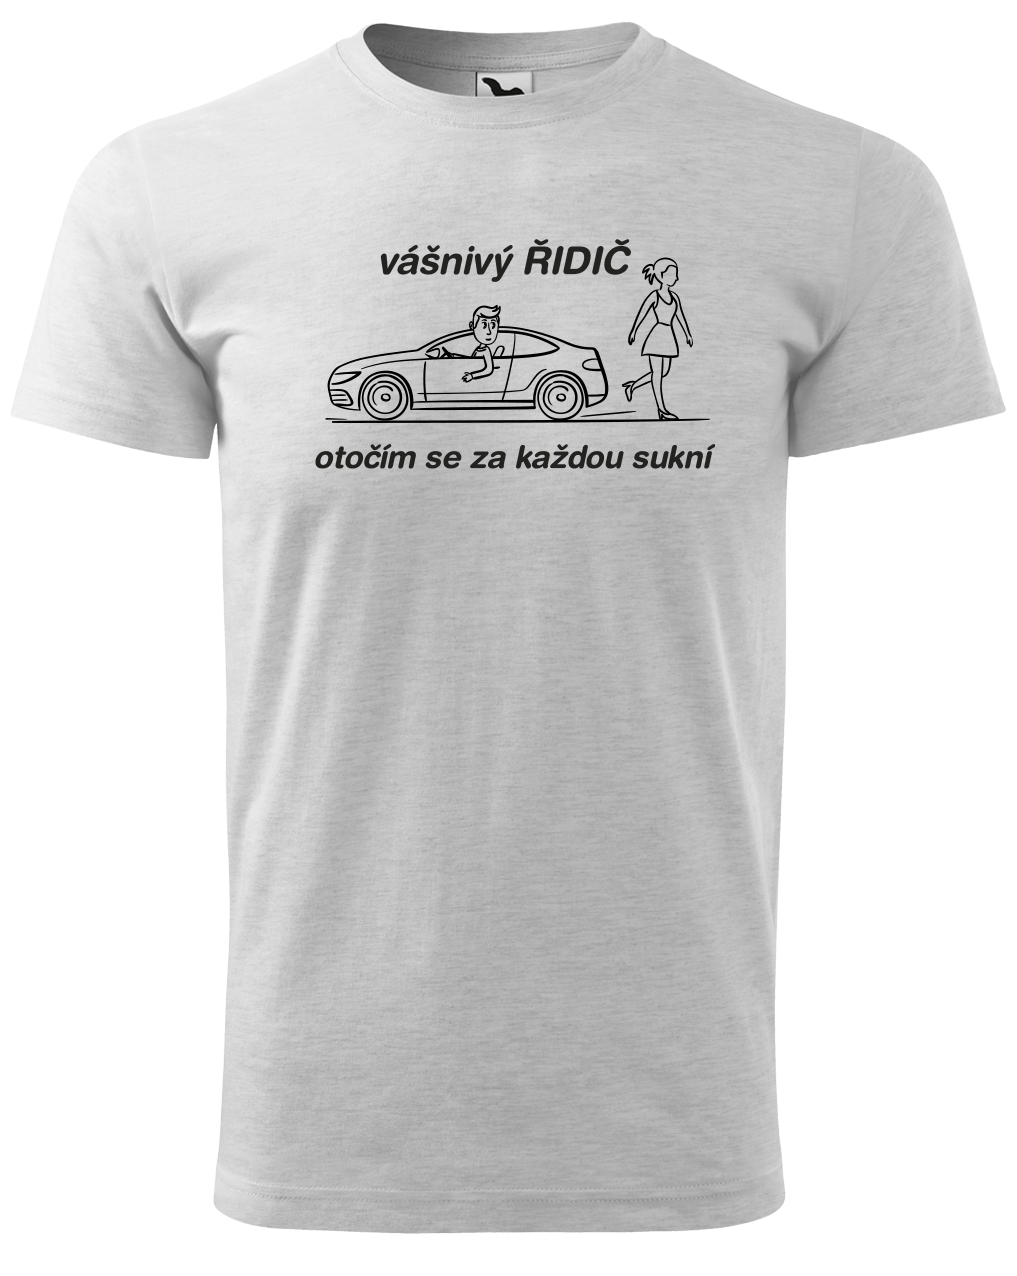 Vtipné tričko pro řidiče - Vášnivý řidič Velikost: XL, Barva: Světle šedý melír (03)